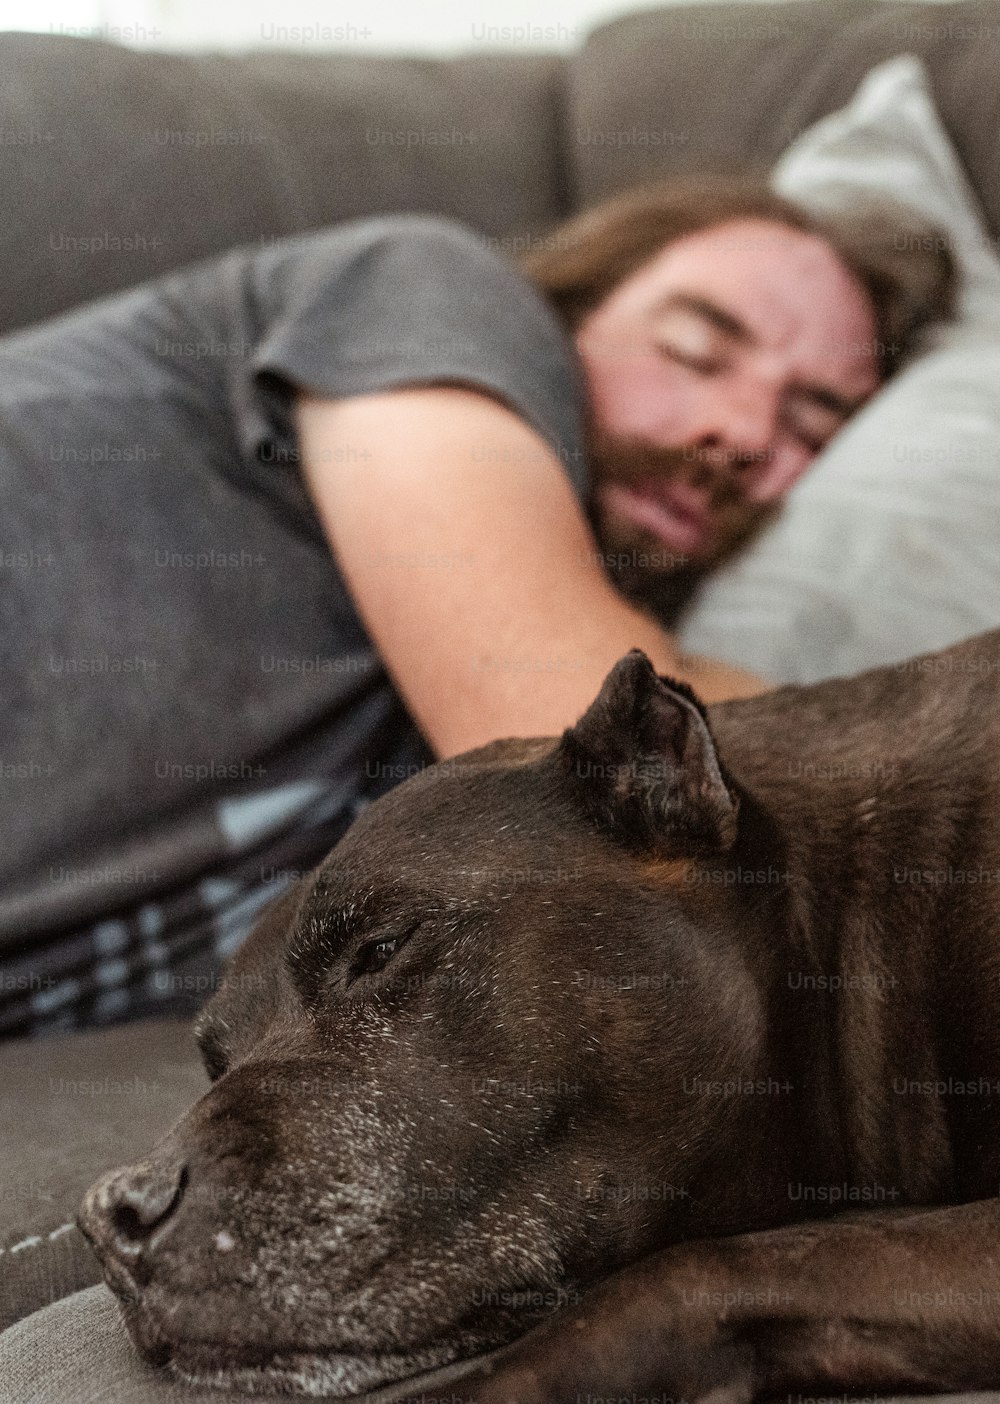 um homem dormindo em um sofá ao lado de um cachorro